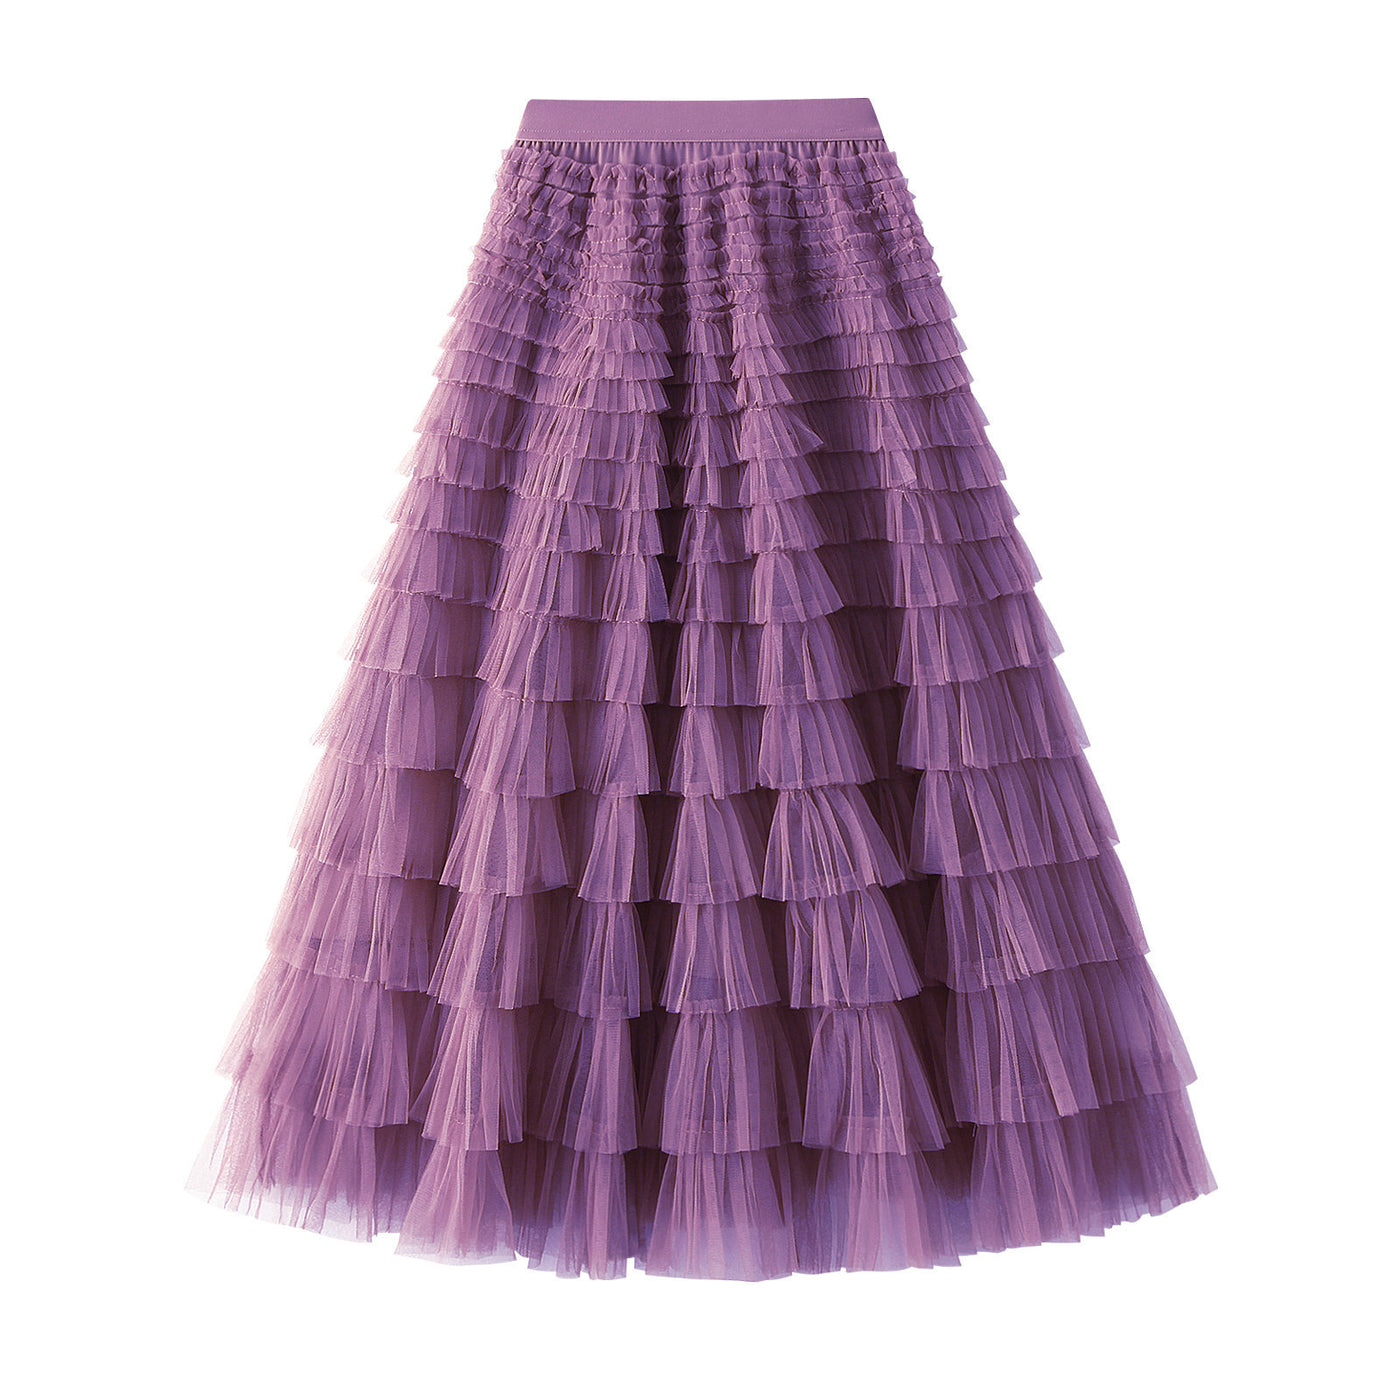 Women's Cupcake Skirt A-Line Mesh Ruffle Skirt Temperament Sweet Long Skirt - Carvan Mart